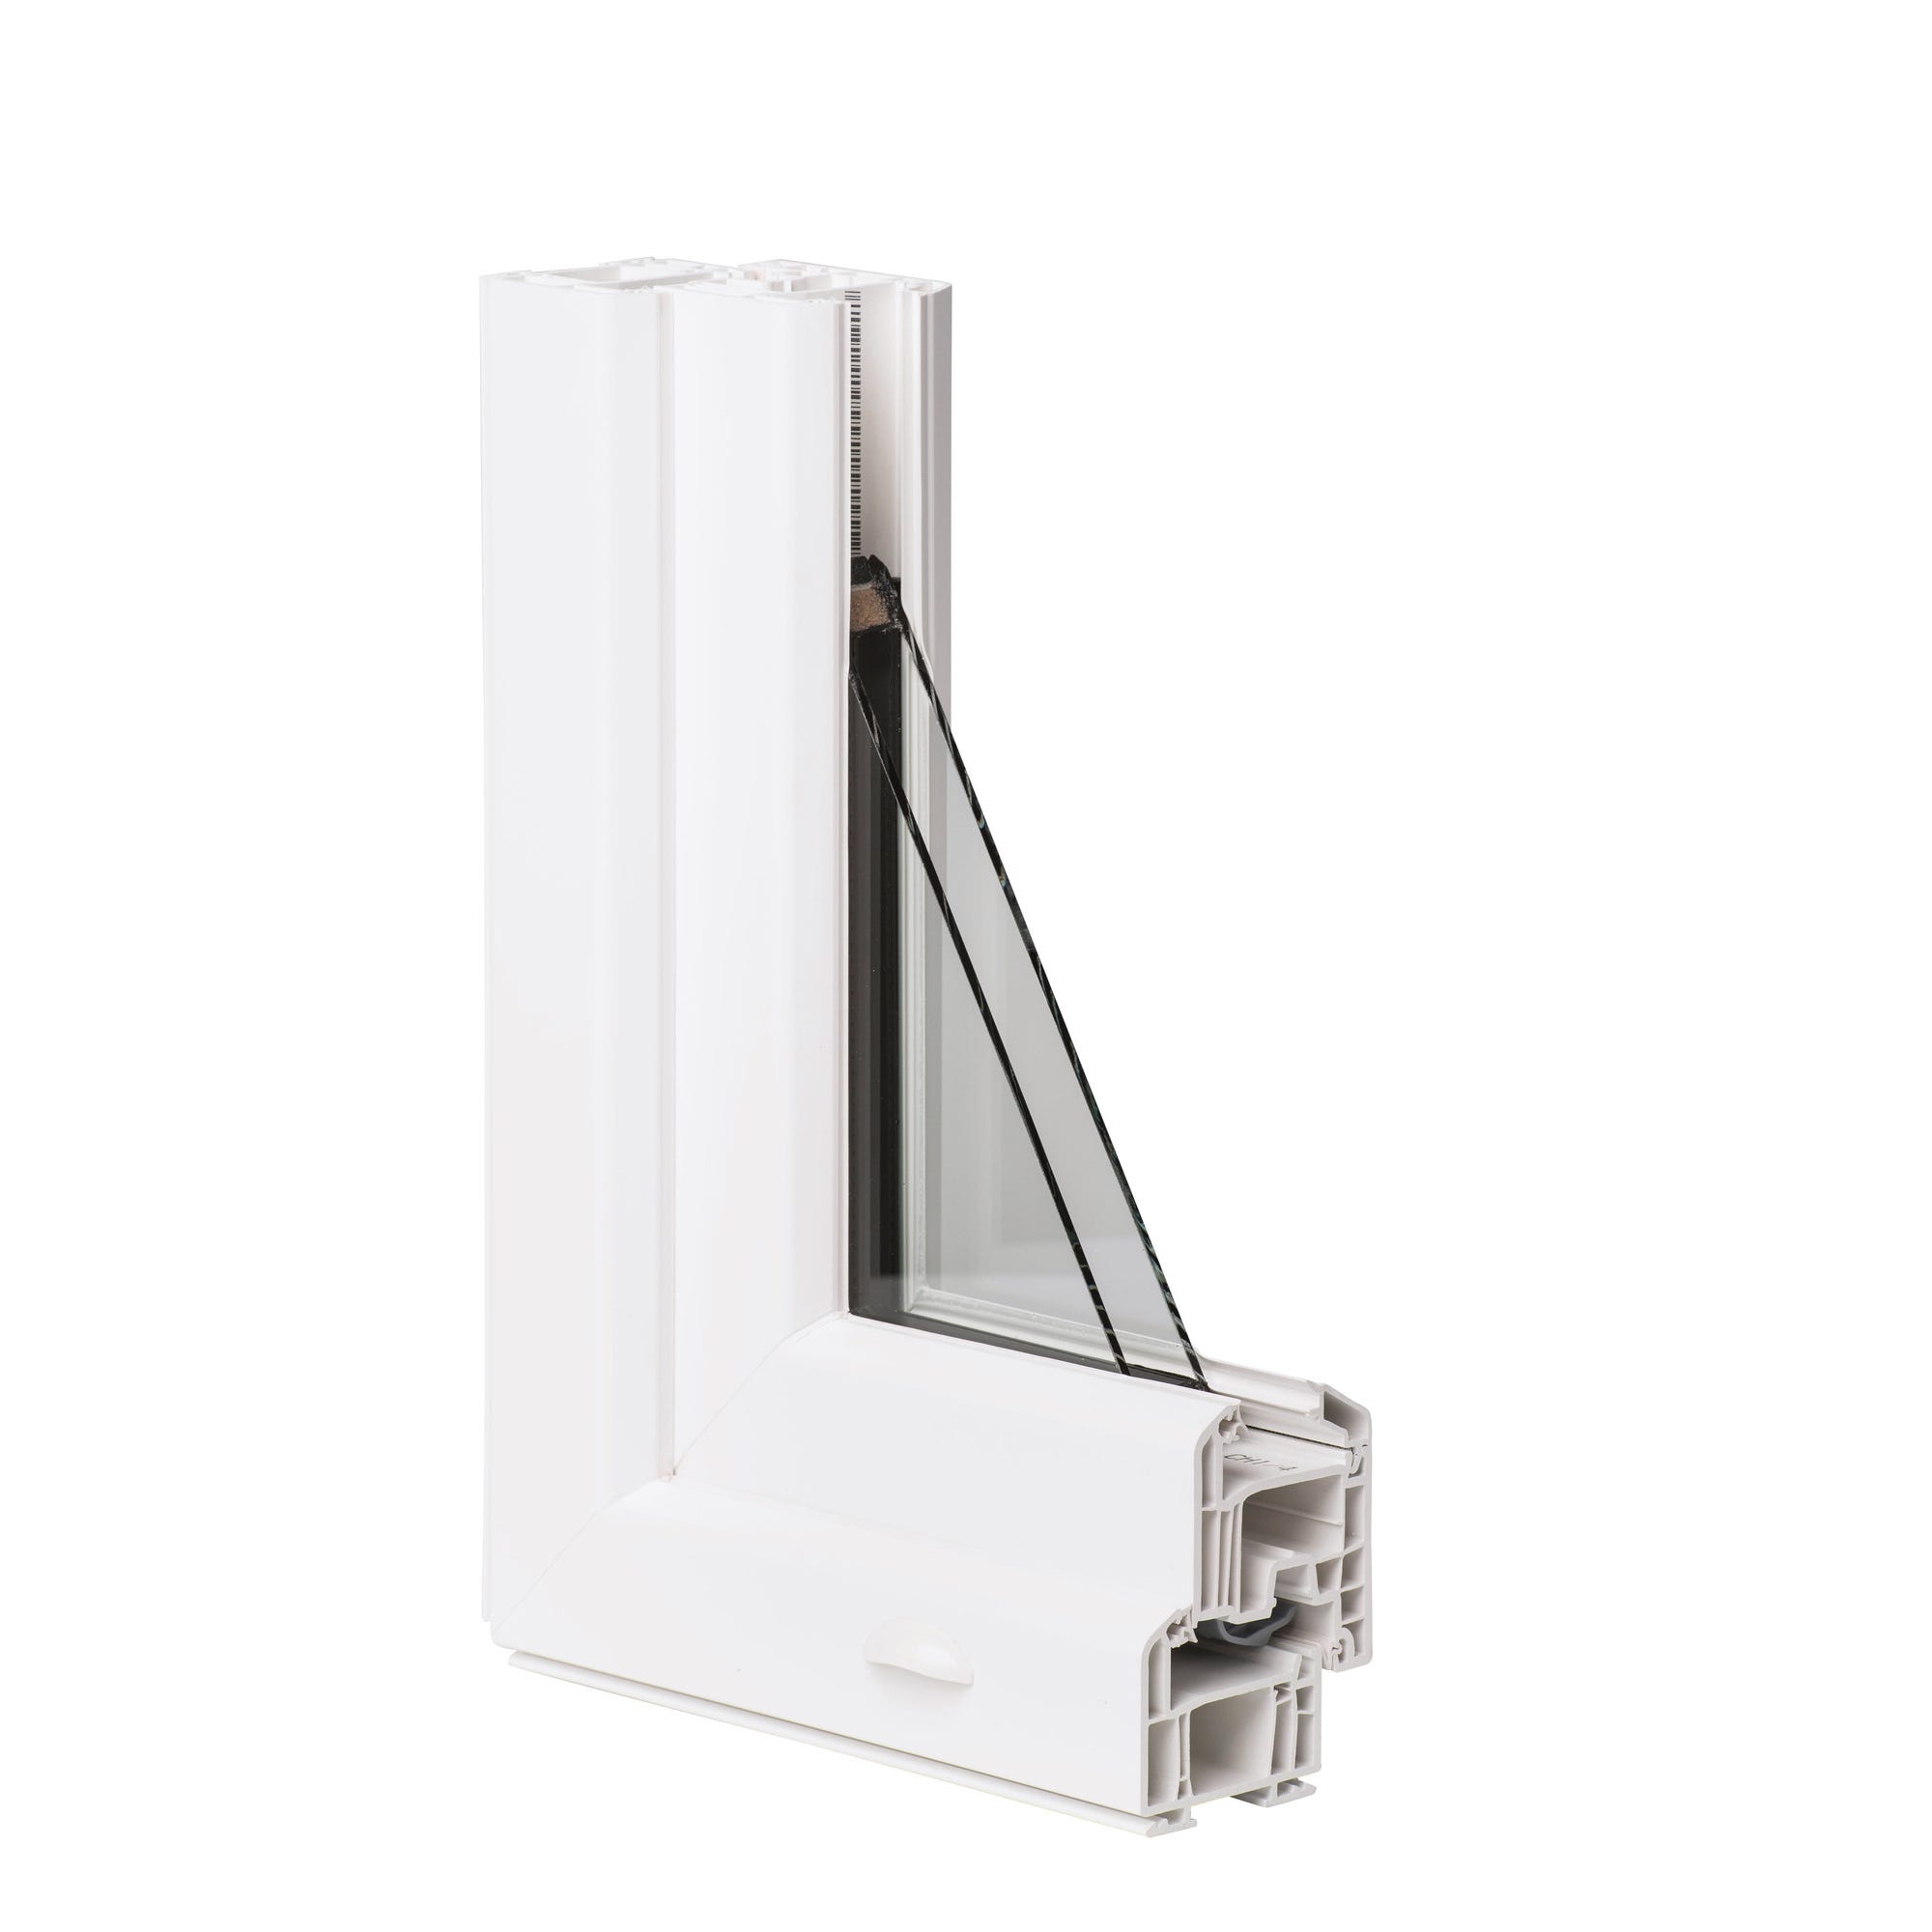 Fenêtre PVC H.155 x l.100 cm oscillo-battant 2 vantaux blanc 2